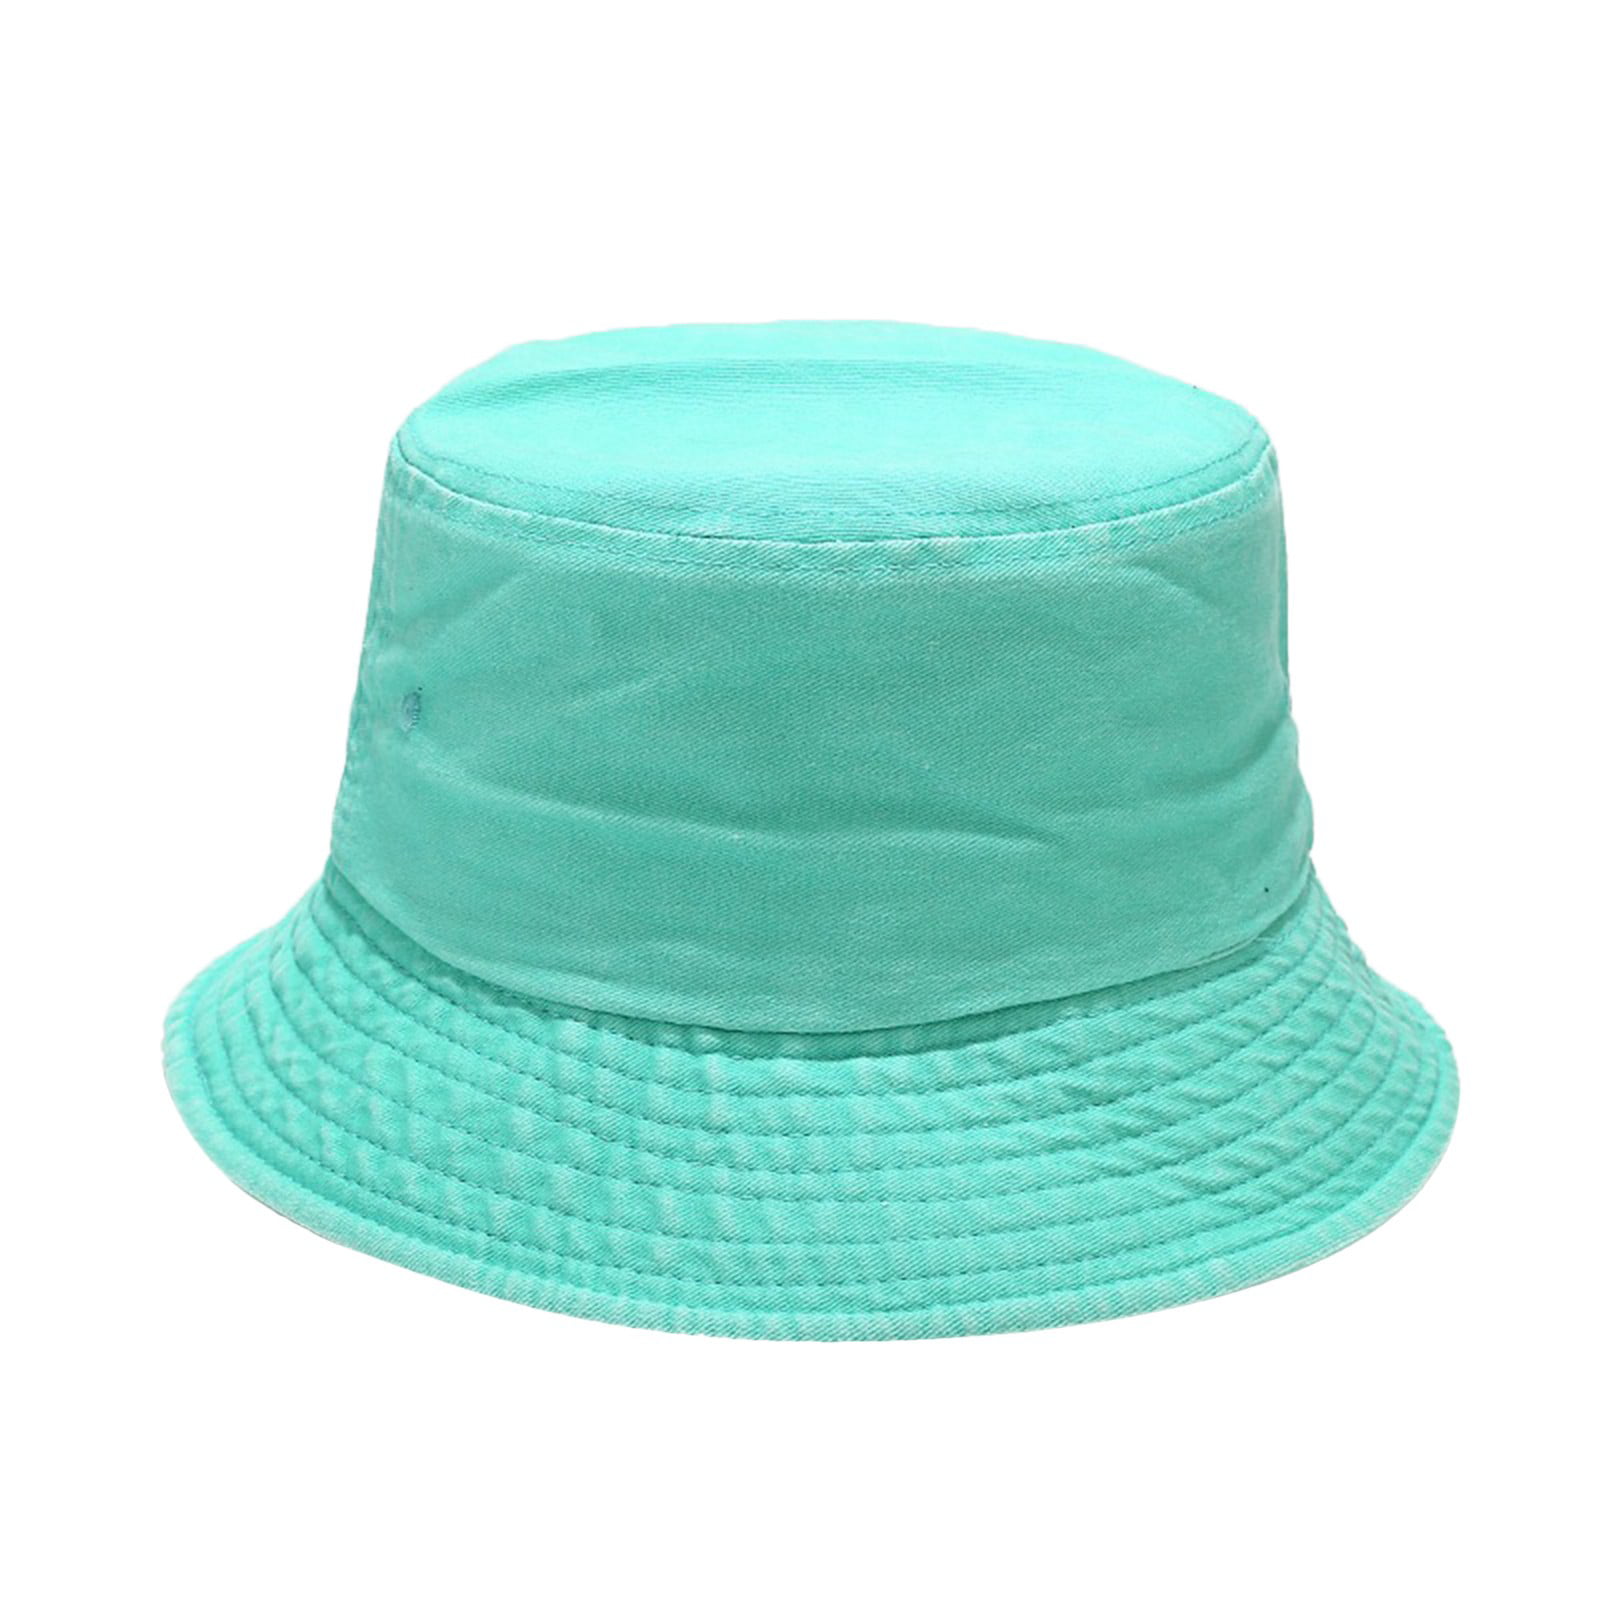 Huaai Bucket Hat for Women Men Trendy Lightweight Outdoor Hot Fun Summer  Sun Beach Fishing Cap Mint Green